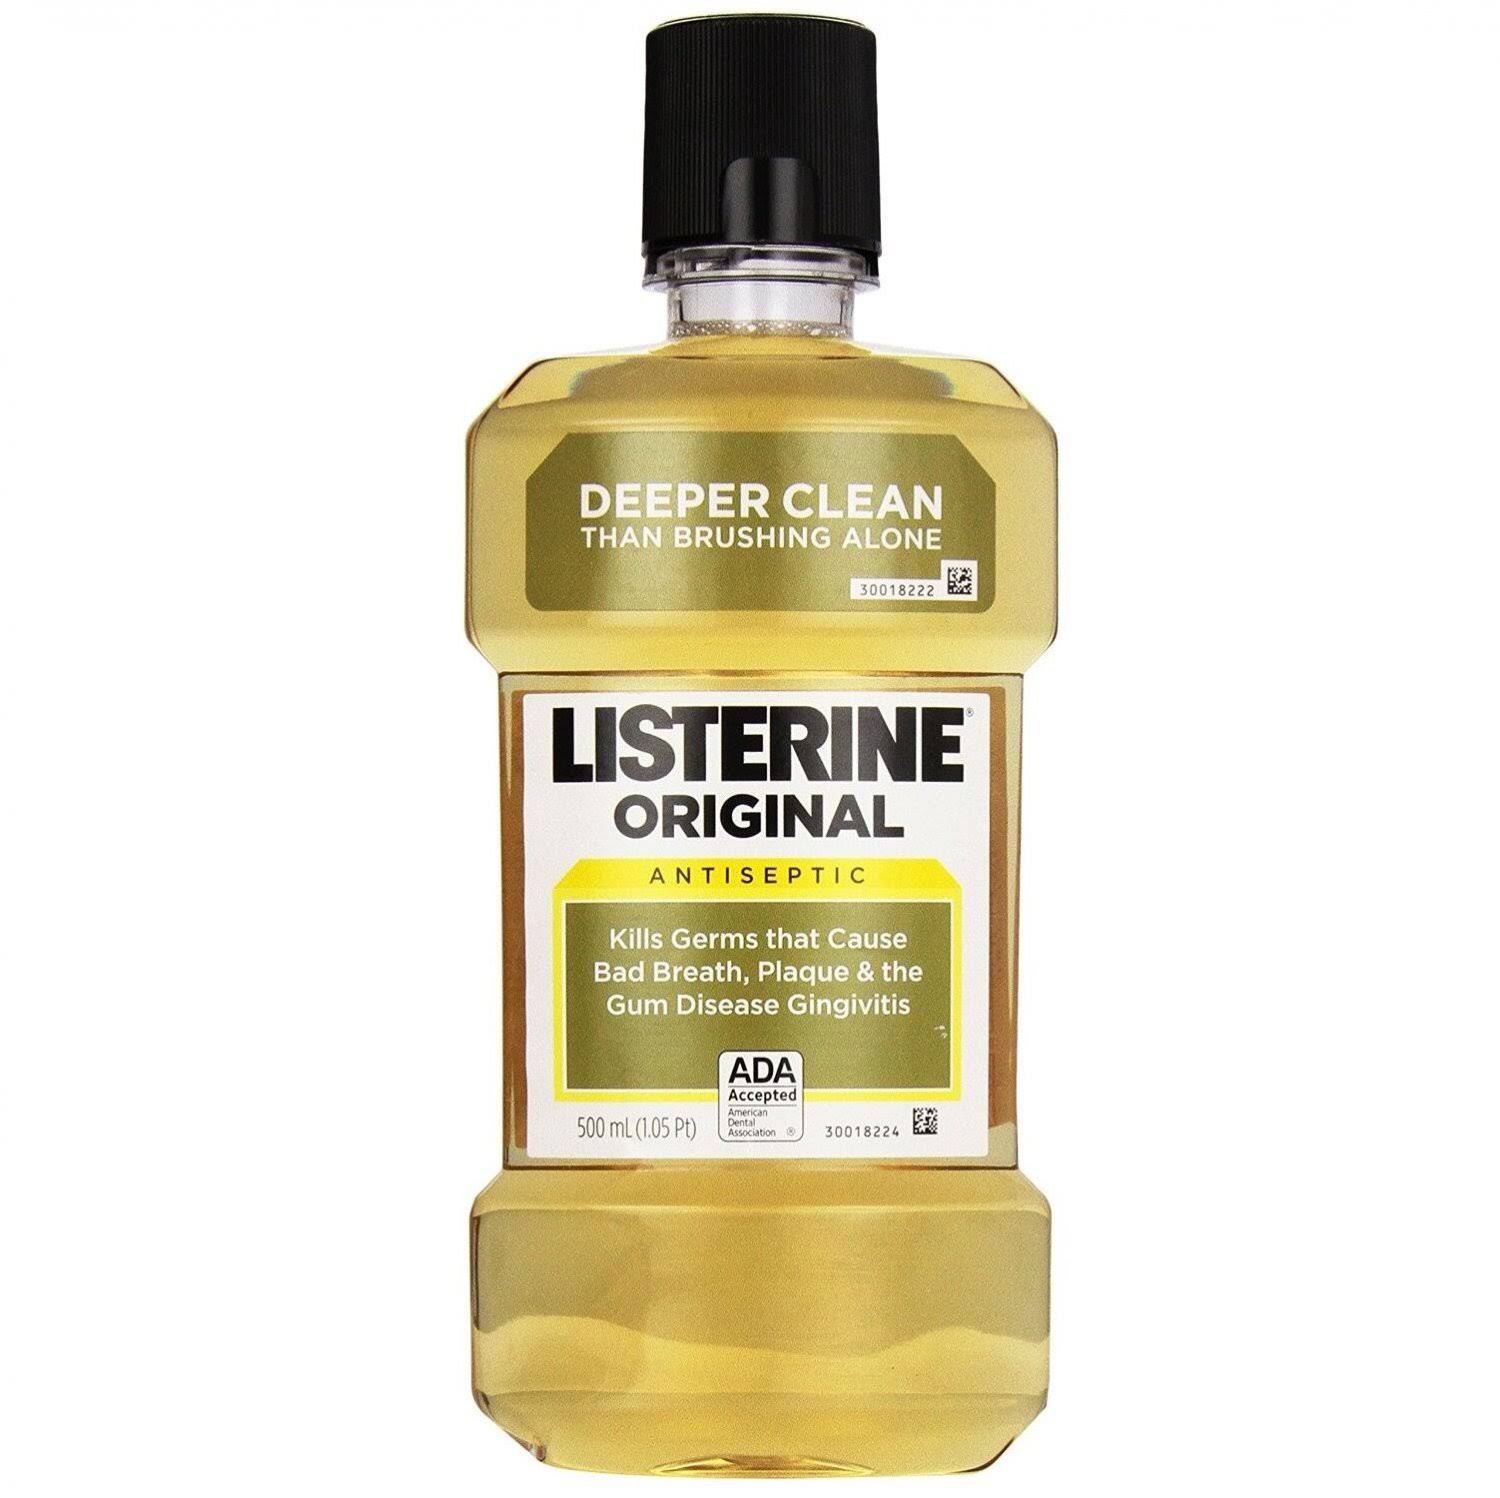 Listerine Original Antiseptic Mouthwash - 500ml